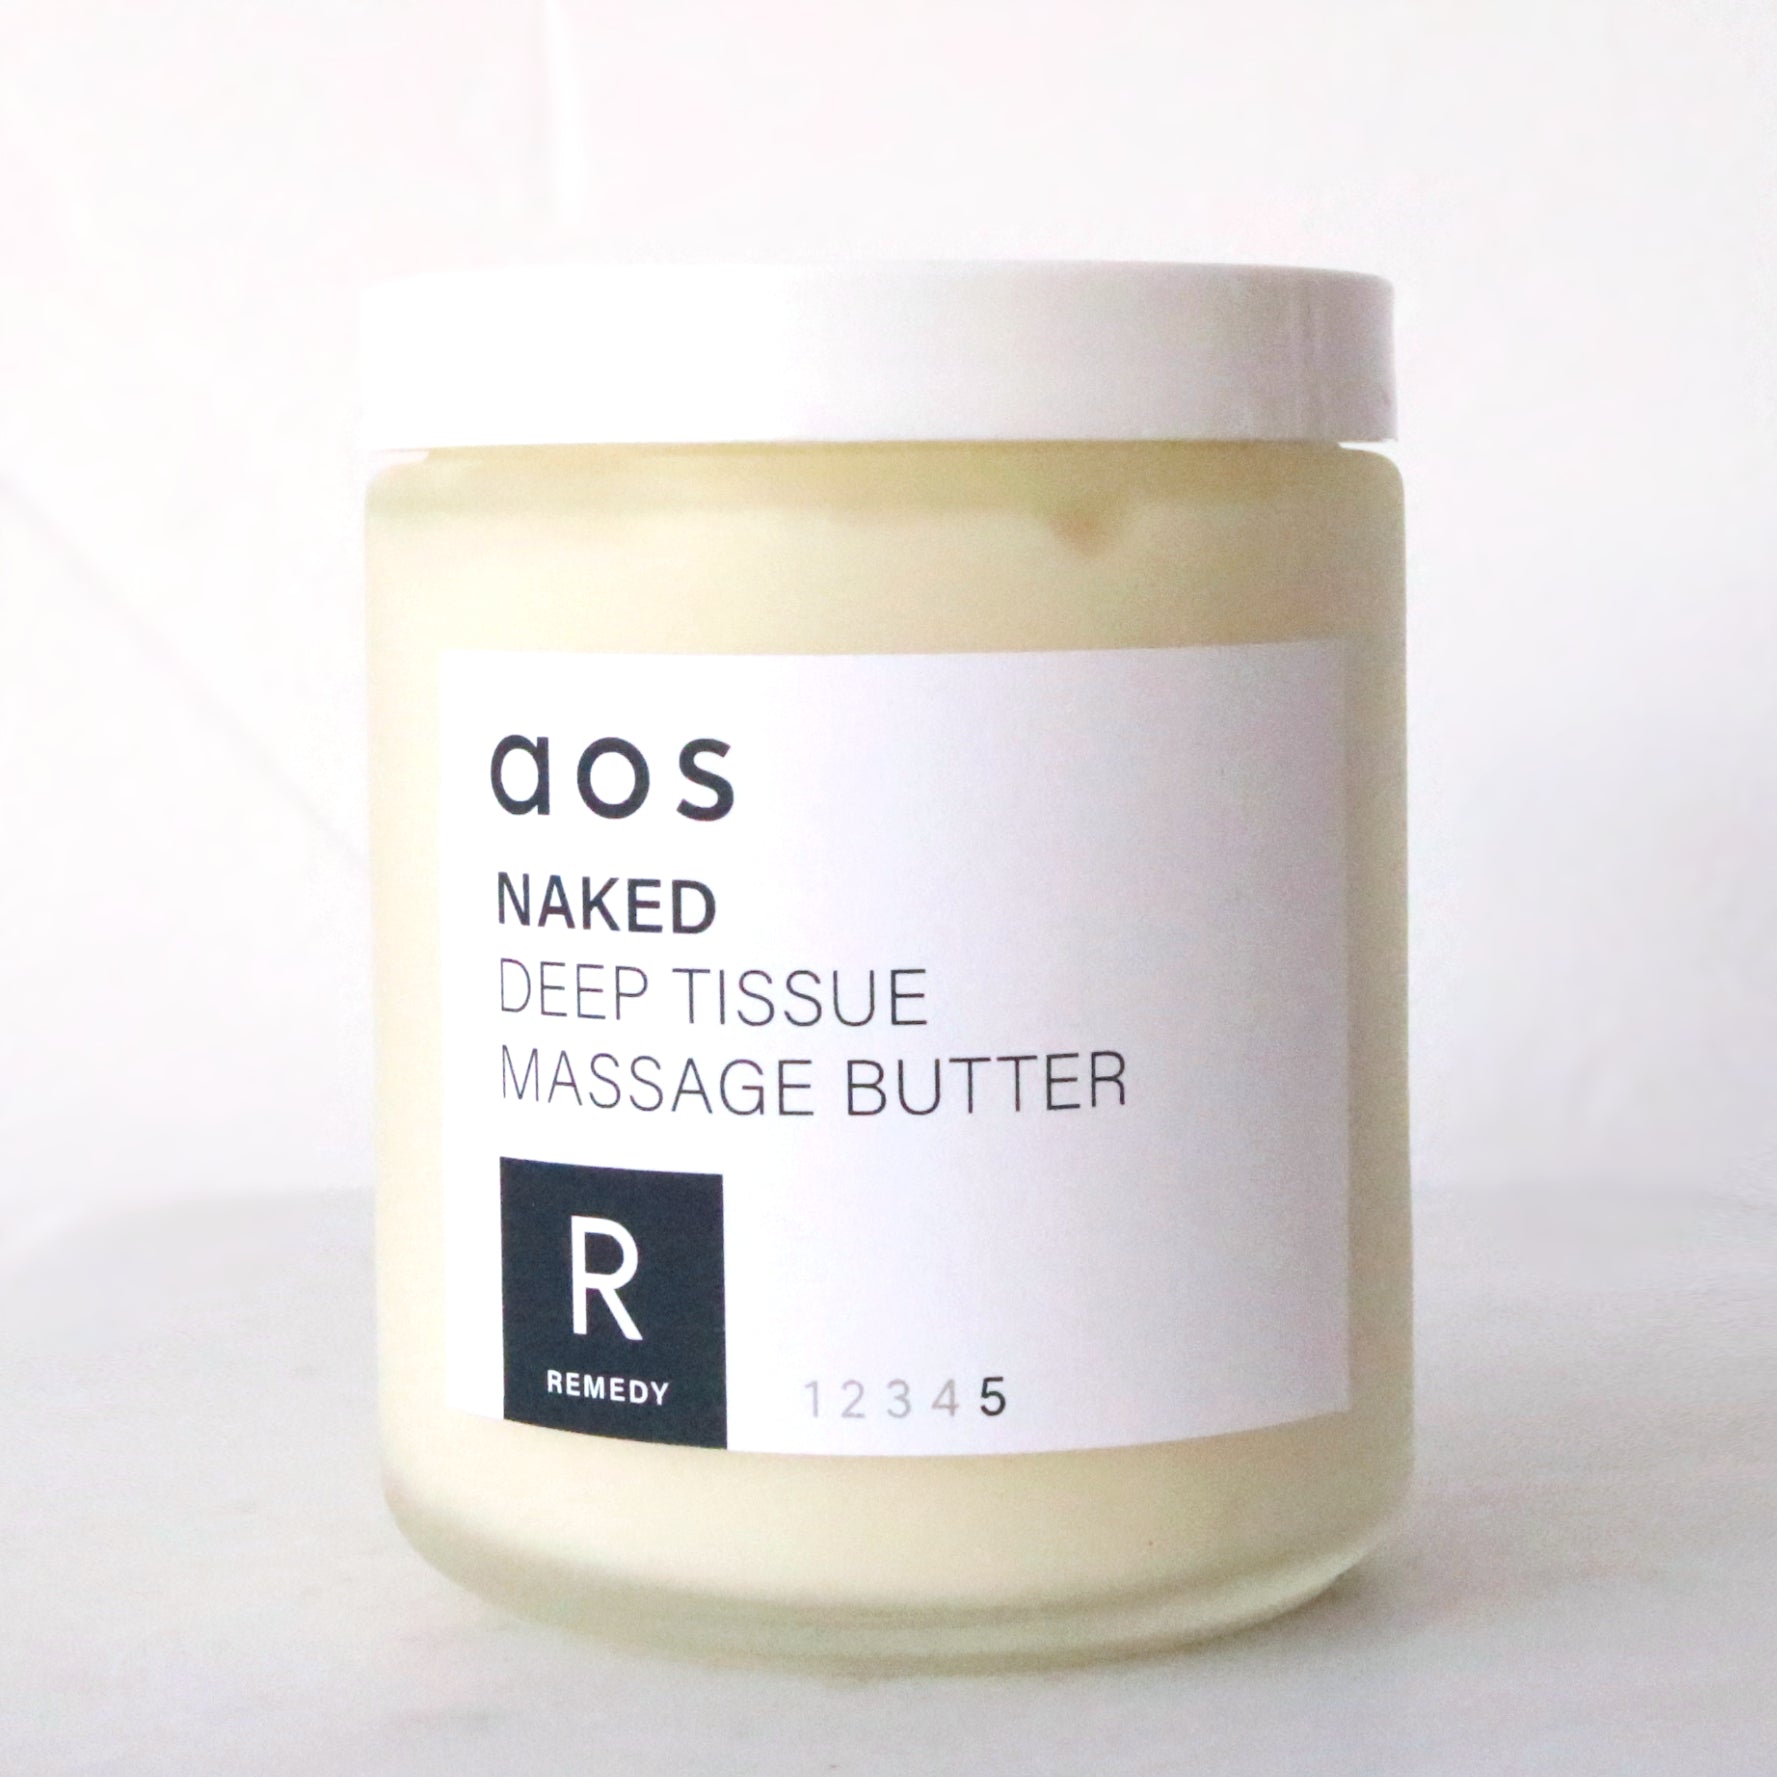 Naked Deep Tissue Massage Butter